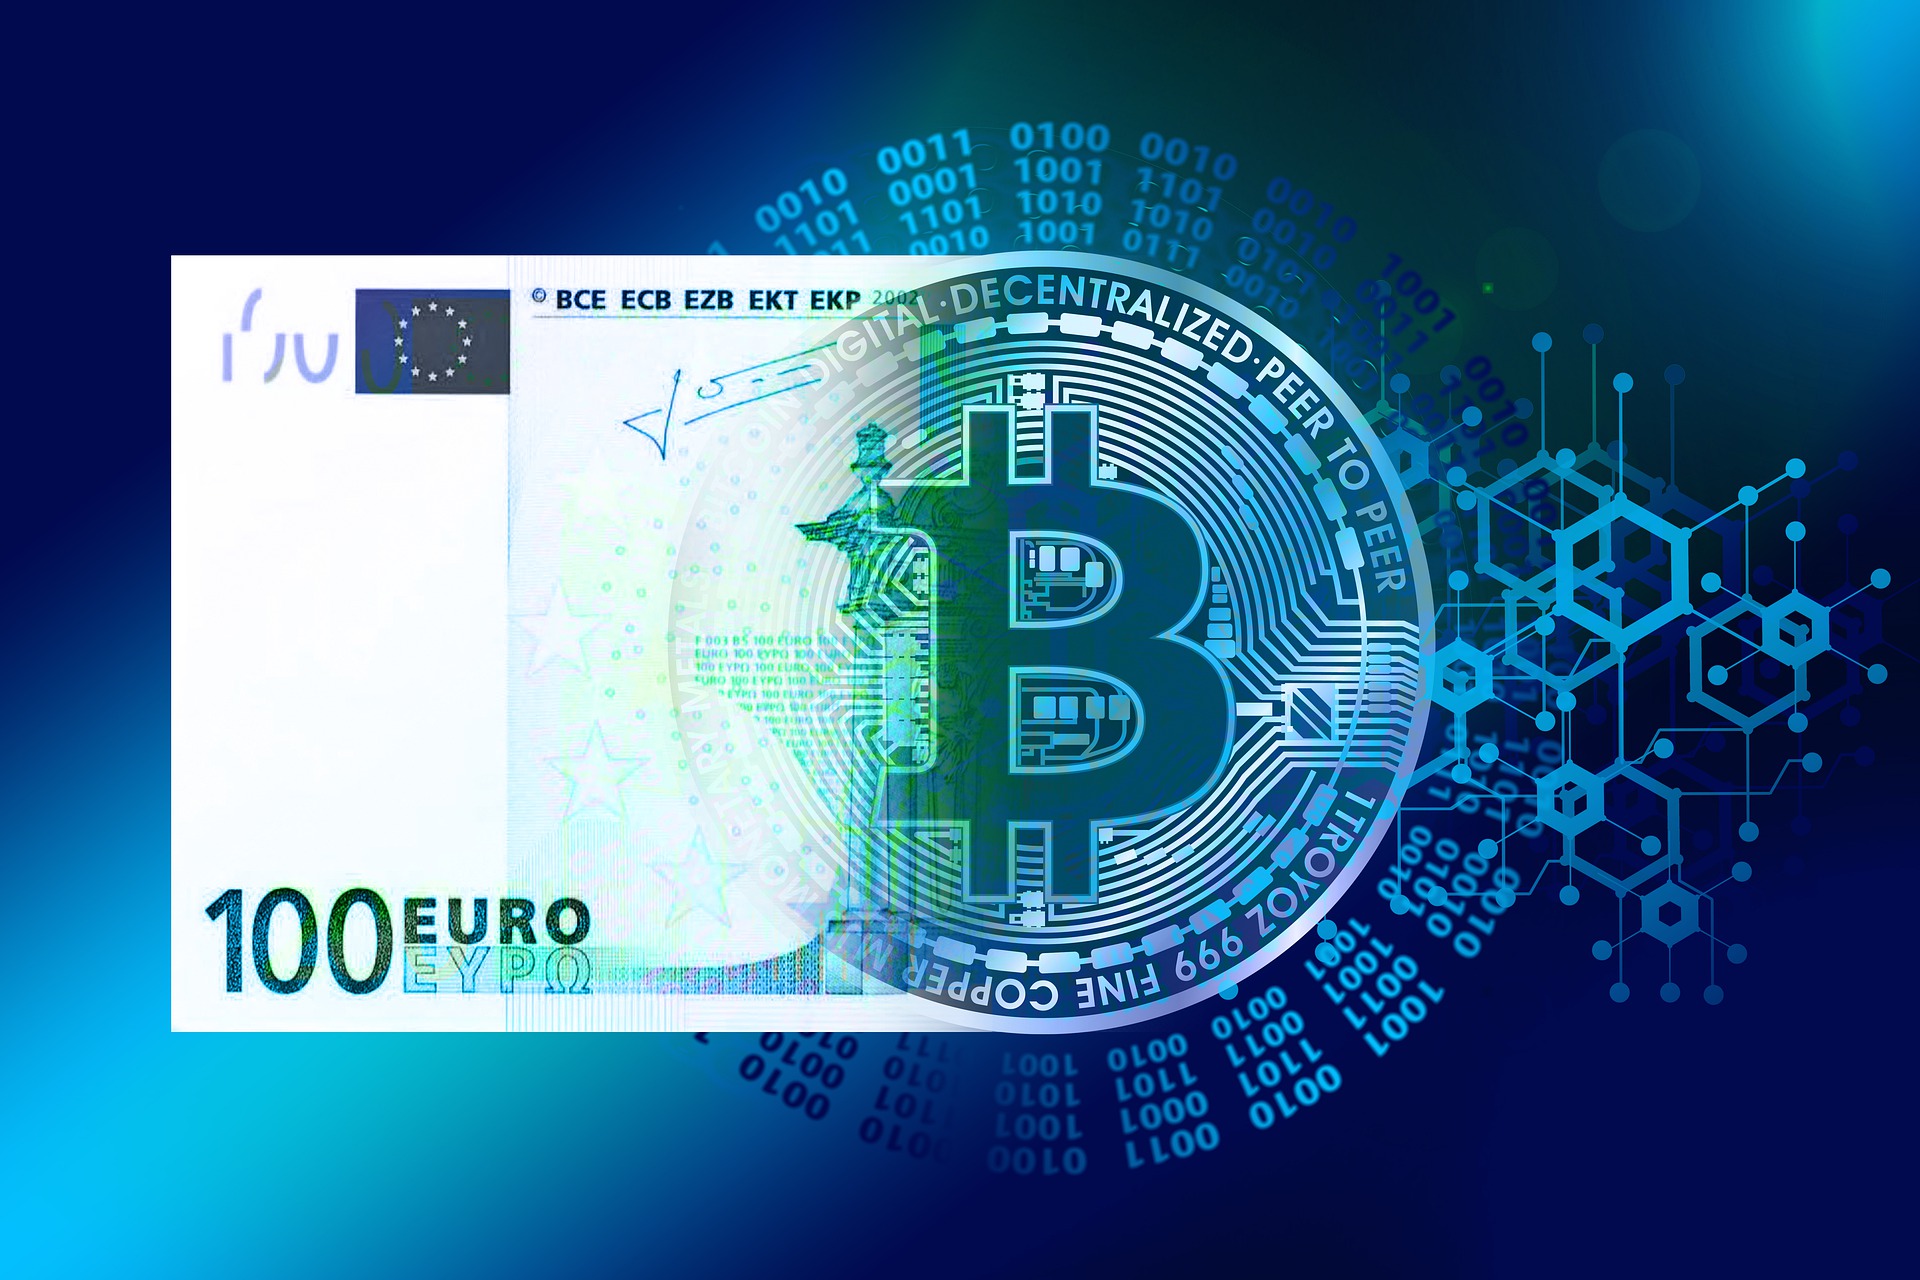 La progressiva trasformazione di 100 euro in un Bitcoin